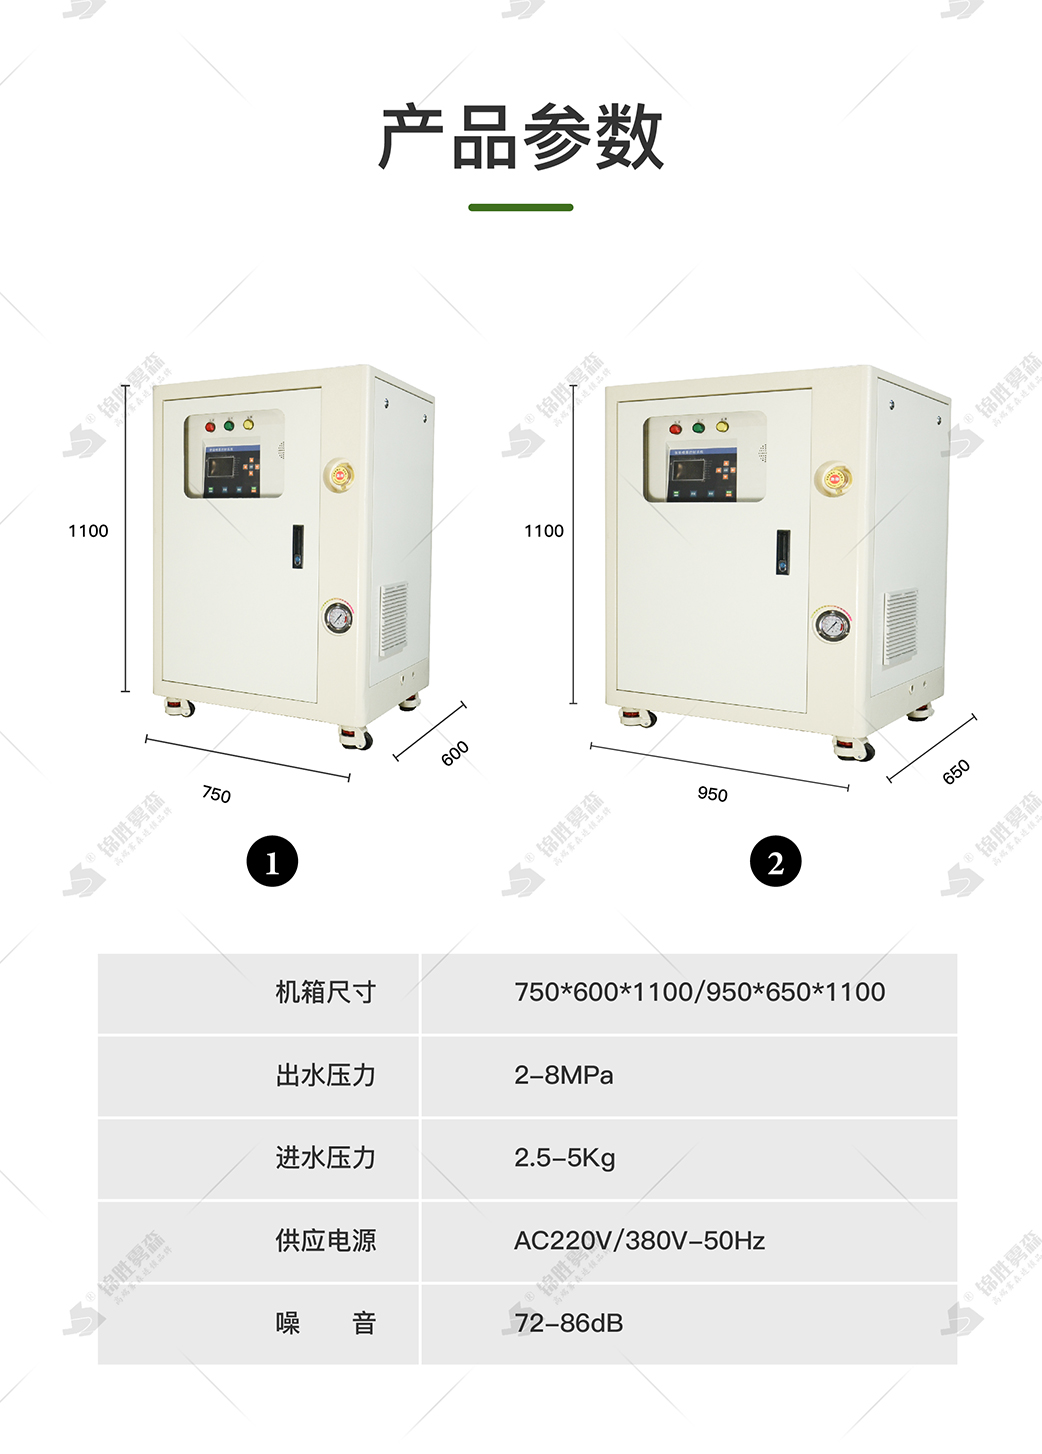 武汉锦胜雾森公司 提供高压喷雾降尘设备 原料车间降尘喷雾系统